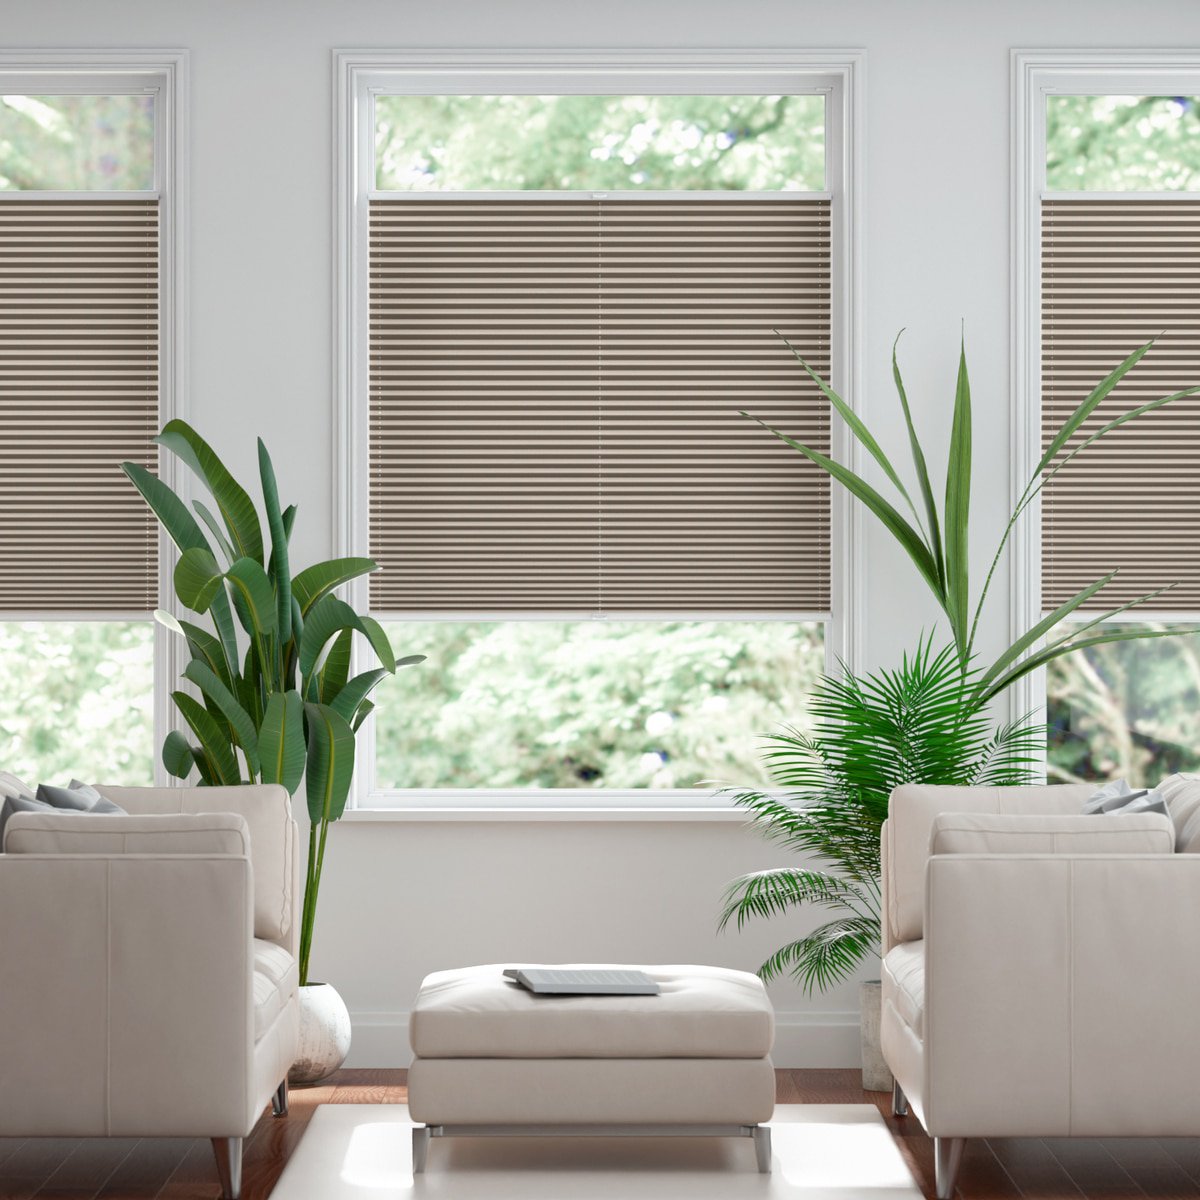 100% blickdichtes Plissee nach Maß mit Struktur, leicht glänzend - Taupe |  Sonnenschutz für Fenster nach Maß - Online-Shop